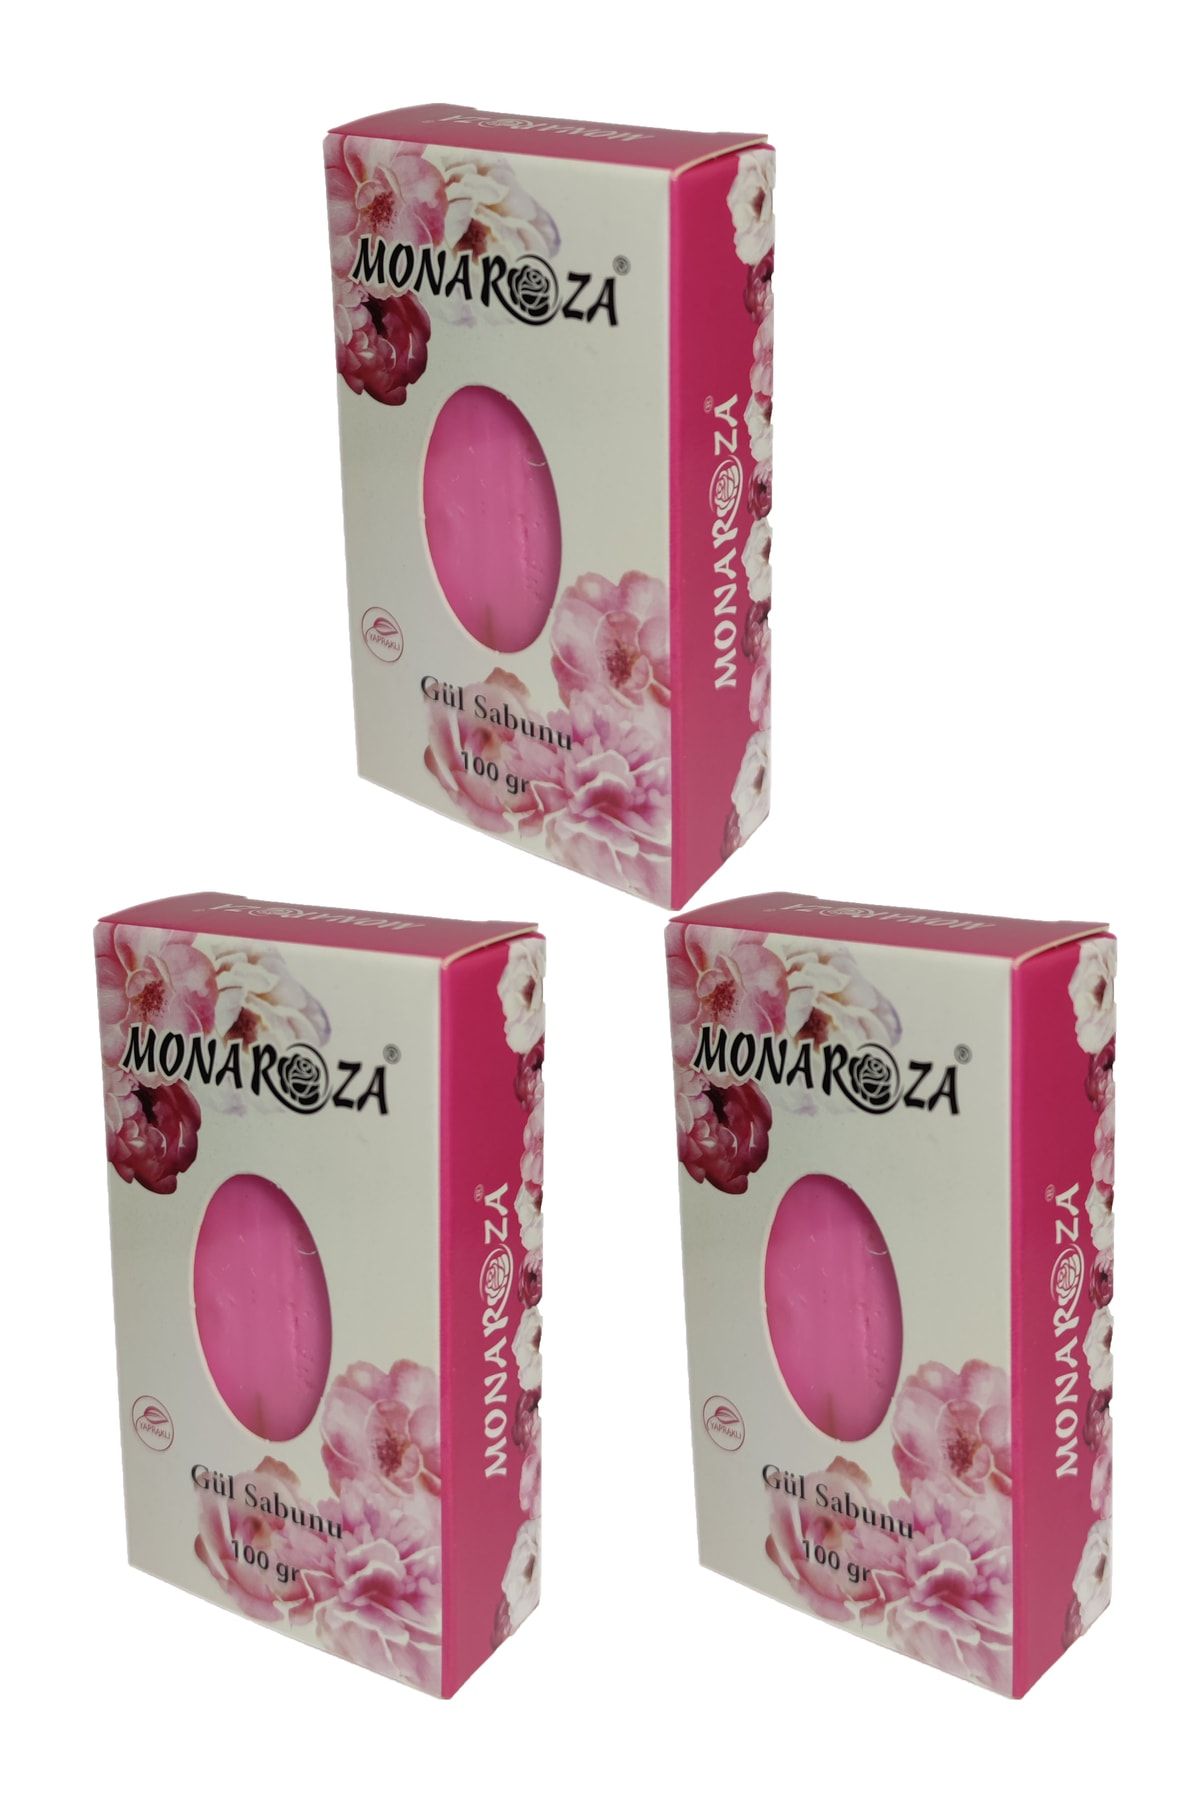 MonaRoza Yapraklı Gül Sabunu 3'lü ( 100 gr X 3 Adet)